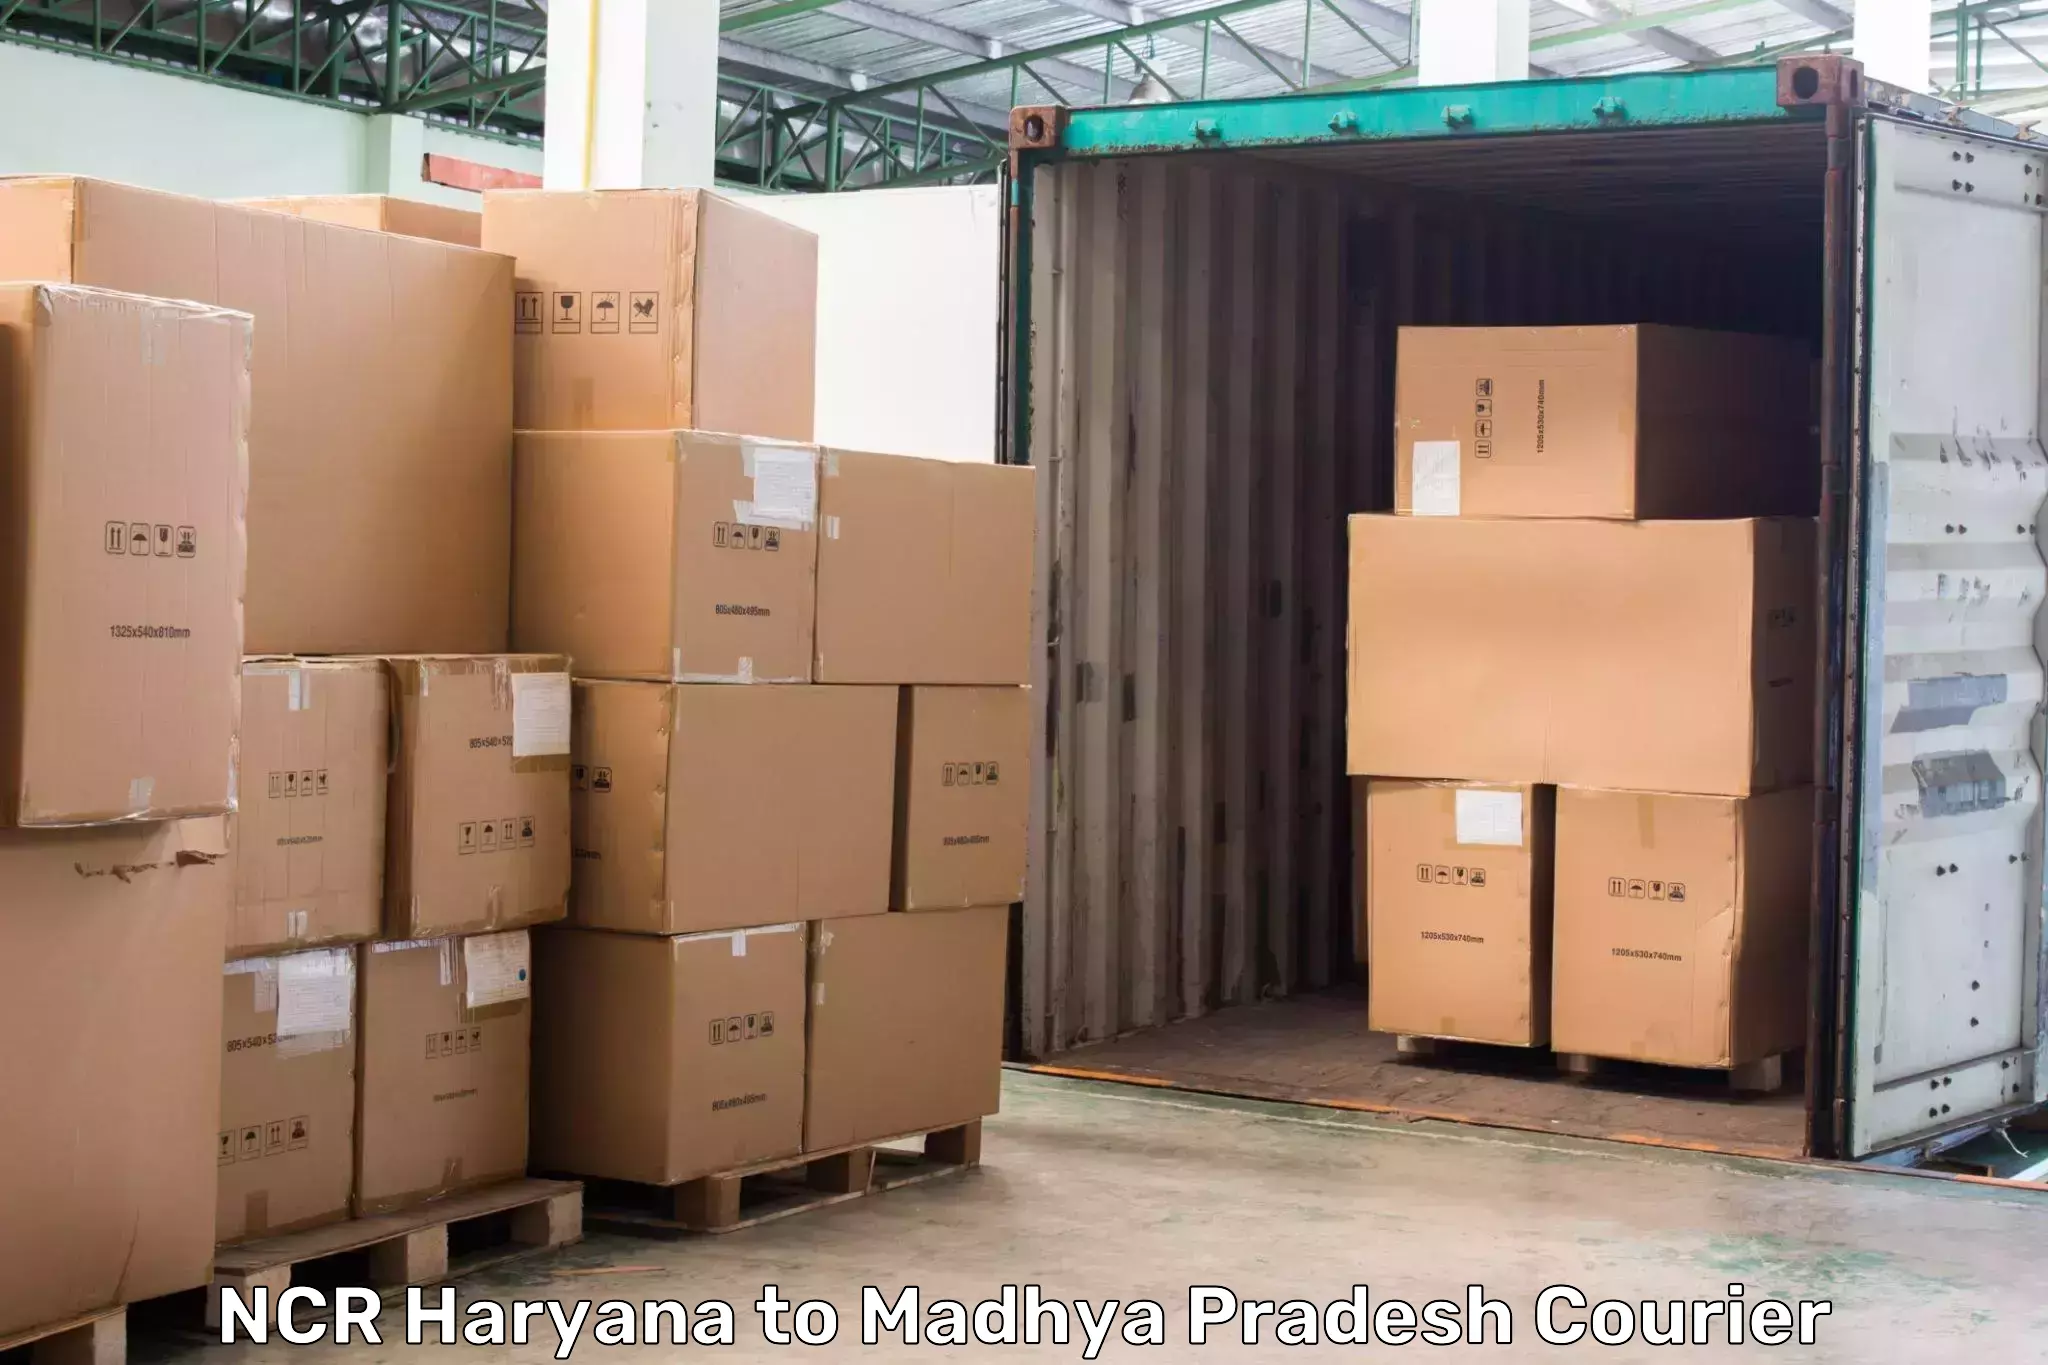 Urgent courier needs NCR Haryana to Madhya Pradesh